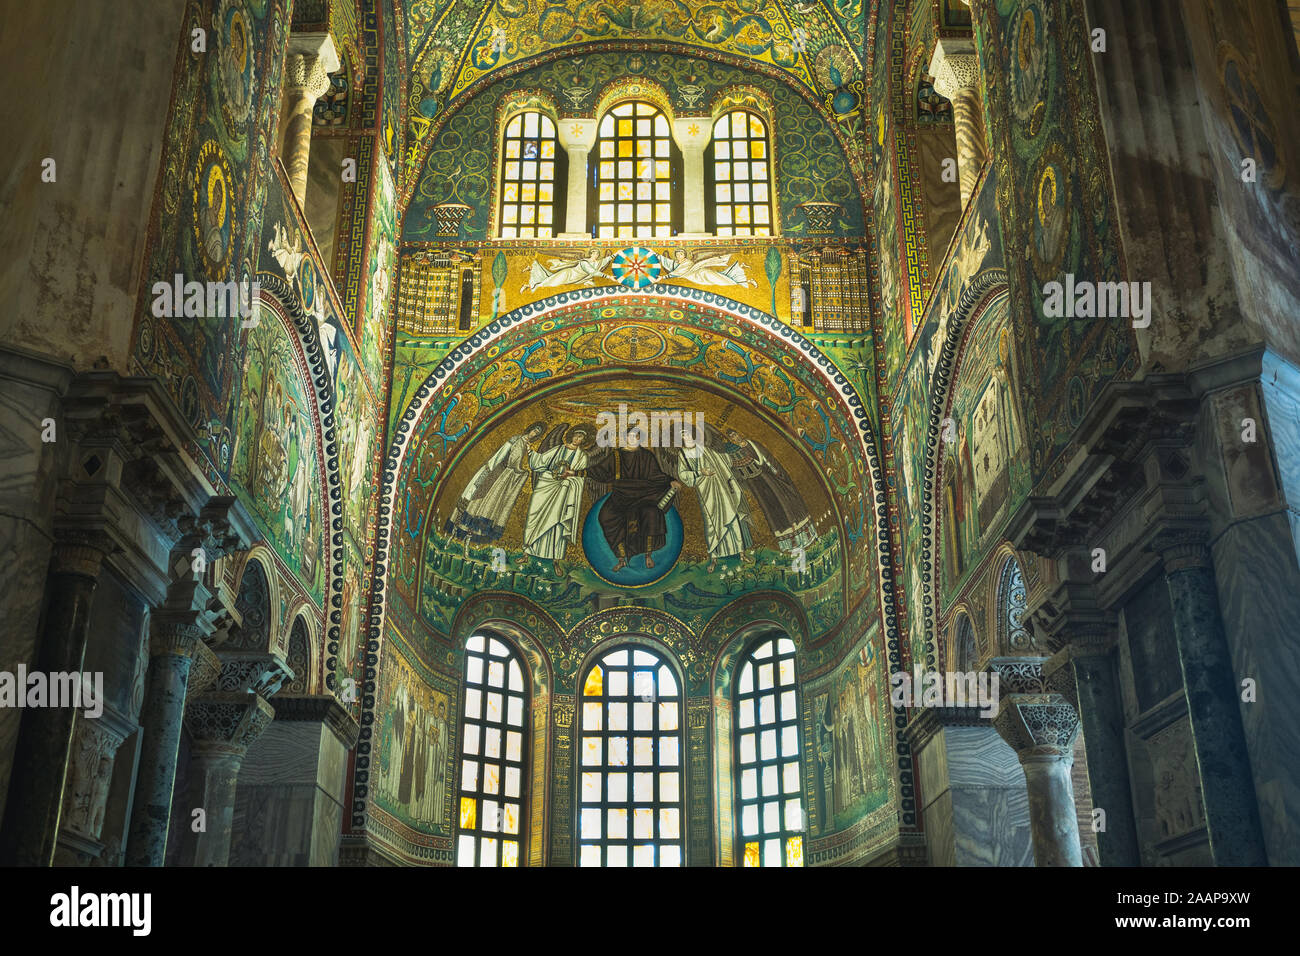 Ravenna, Italia 29 luglio 2019: la Basilica di San Vitale è uno dei più importanti esempi sopravvissuti di paleocristiano di arte bizantina e architetto Foto Stock